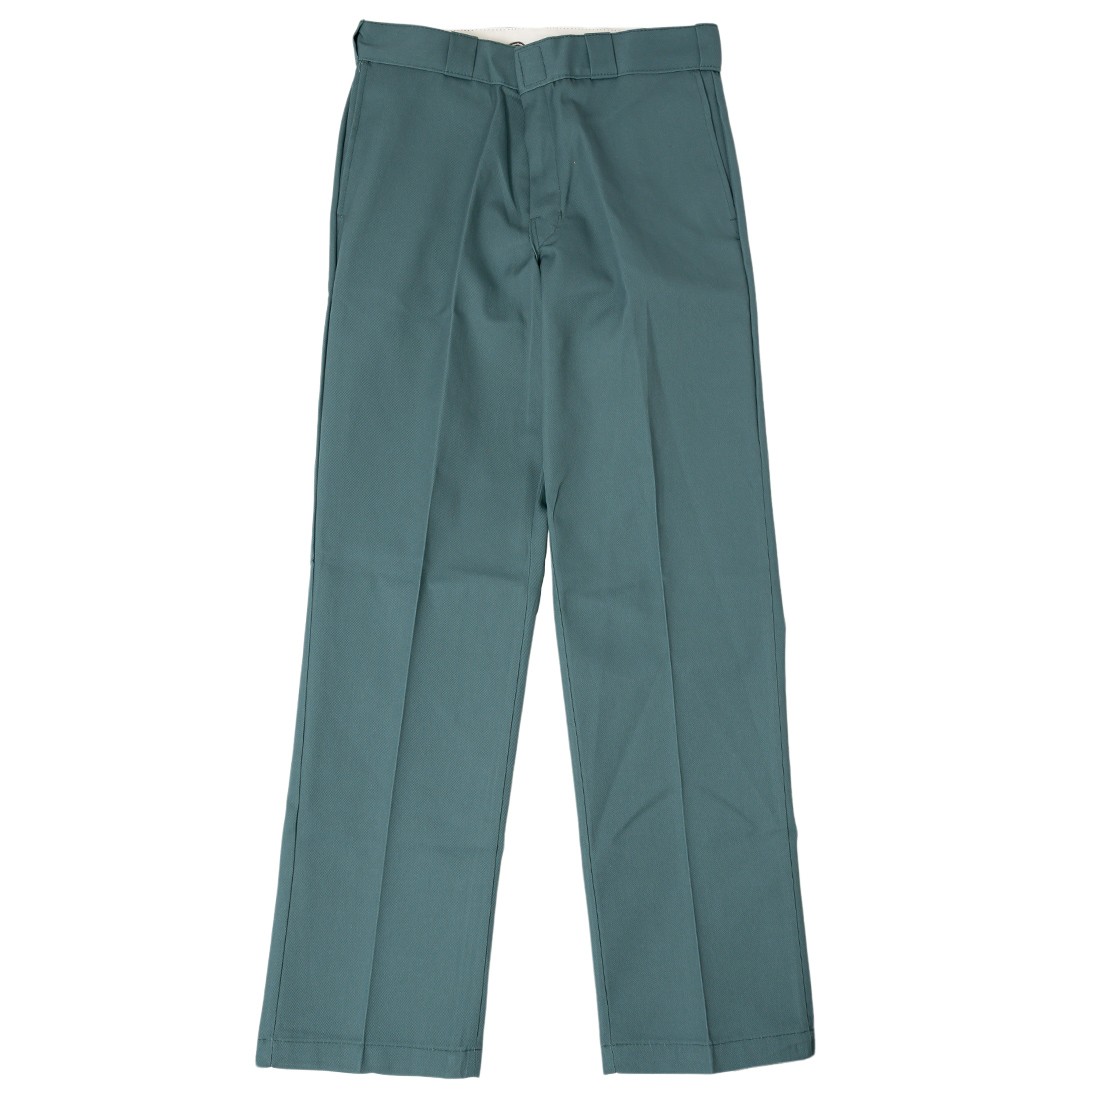 Dickies Men Original Fit 874 Work Pants green lincoln green